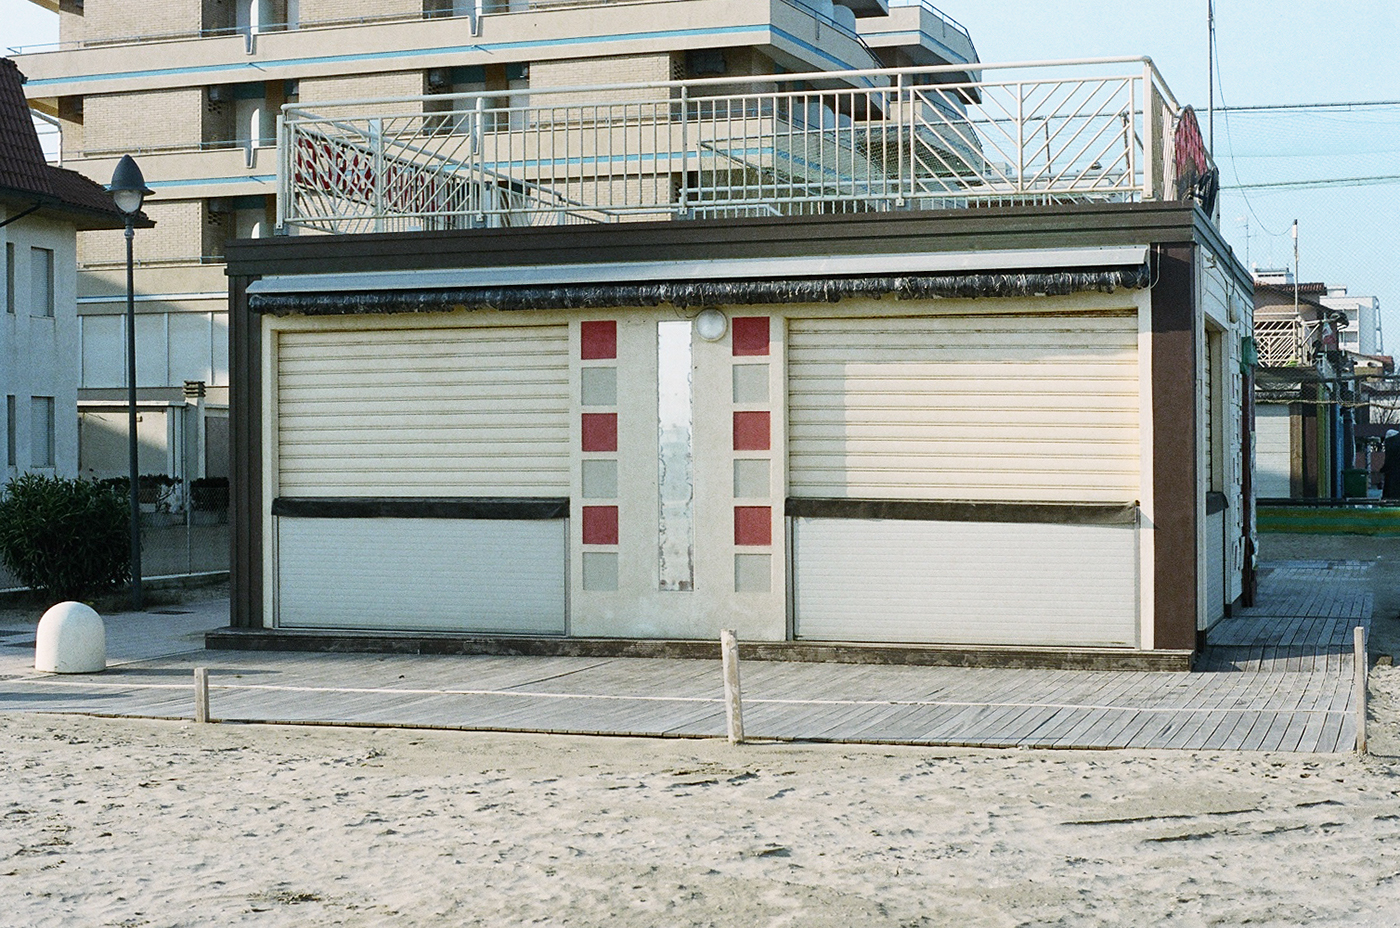 Riviera adriatico emilia romagna beach winter pastel kodak portra Analogue film 35mm silence sea hello ciaomare